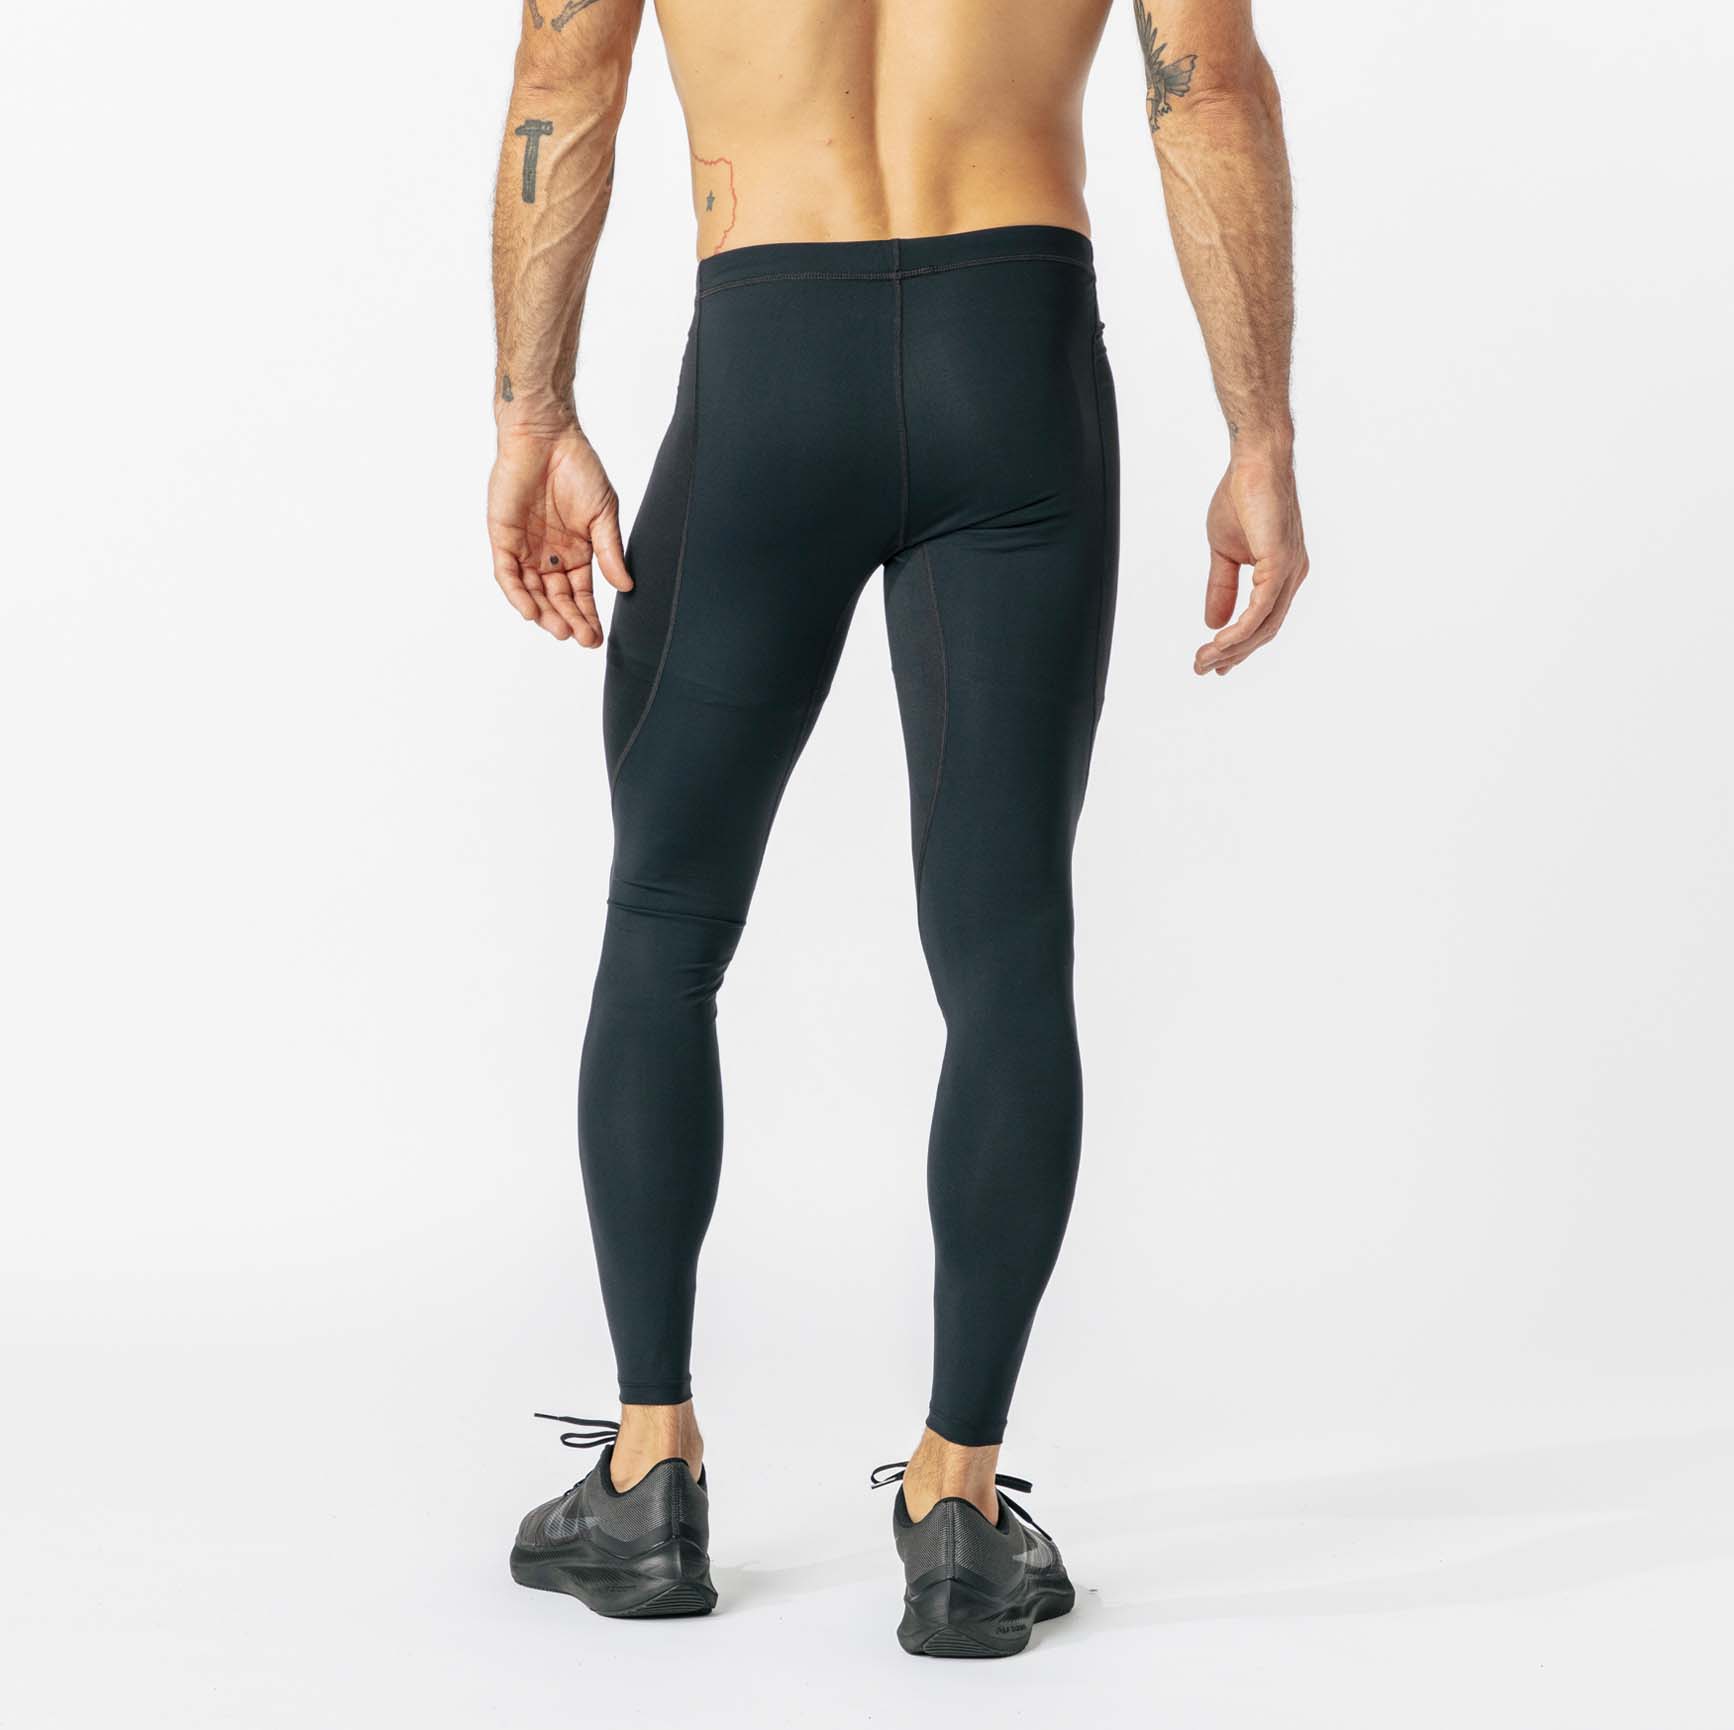 Under Armour: Thermal Leggings  Thermal leggings, Leggings shop